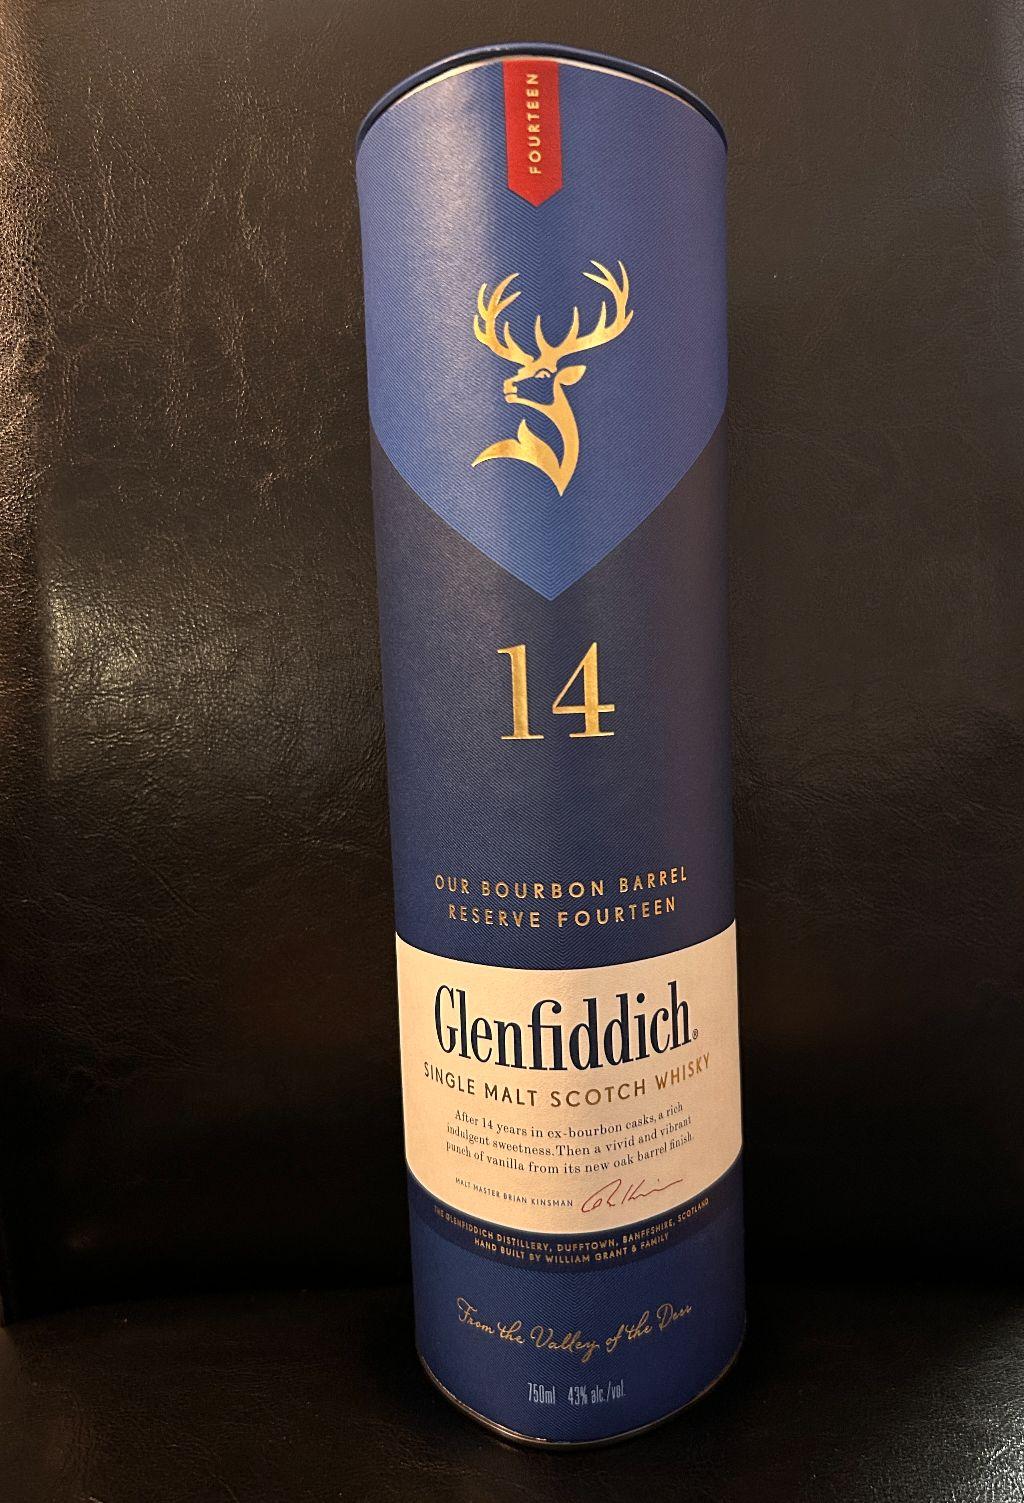 Bottle of Glenfiddich 14 Single Malt Scotch Whisky